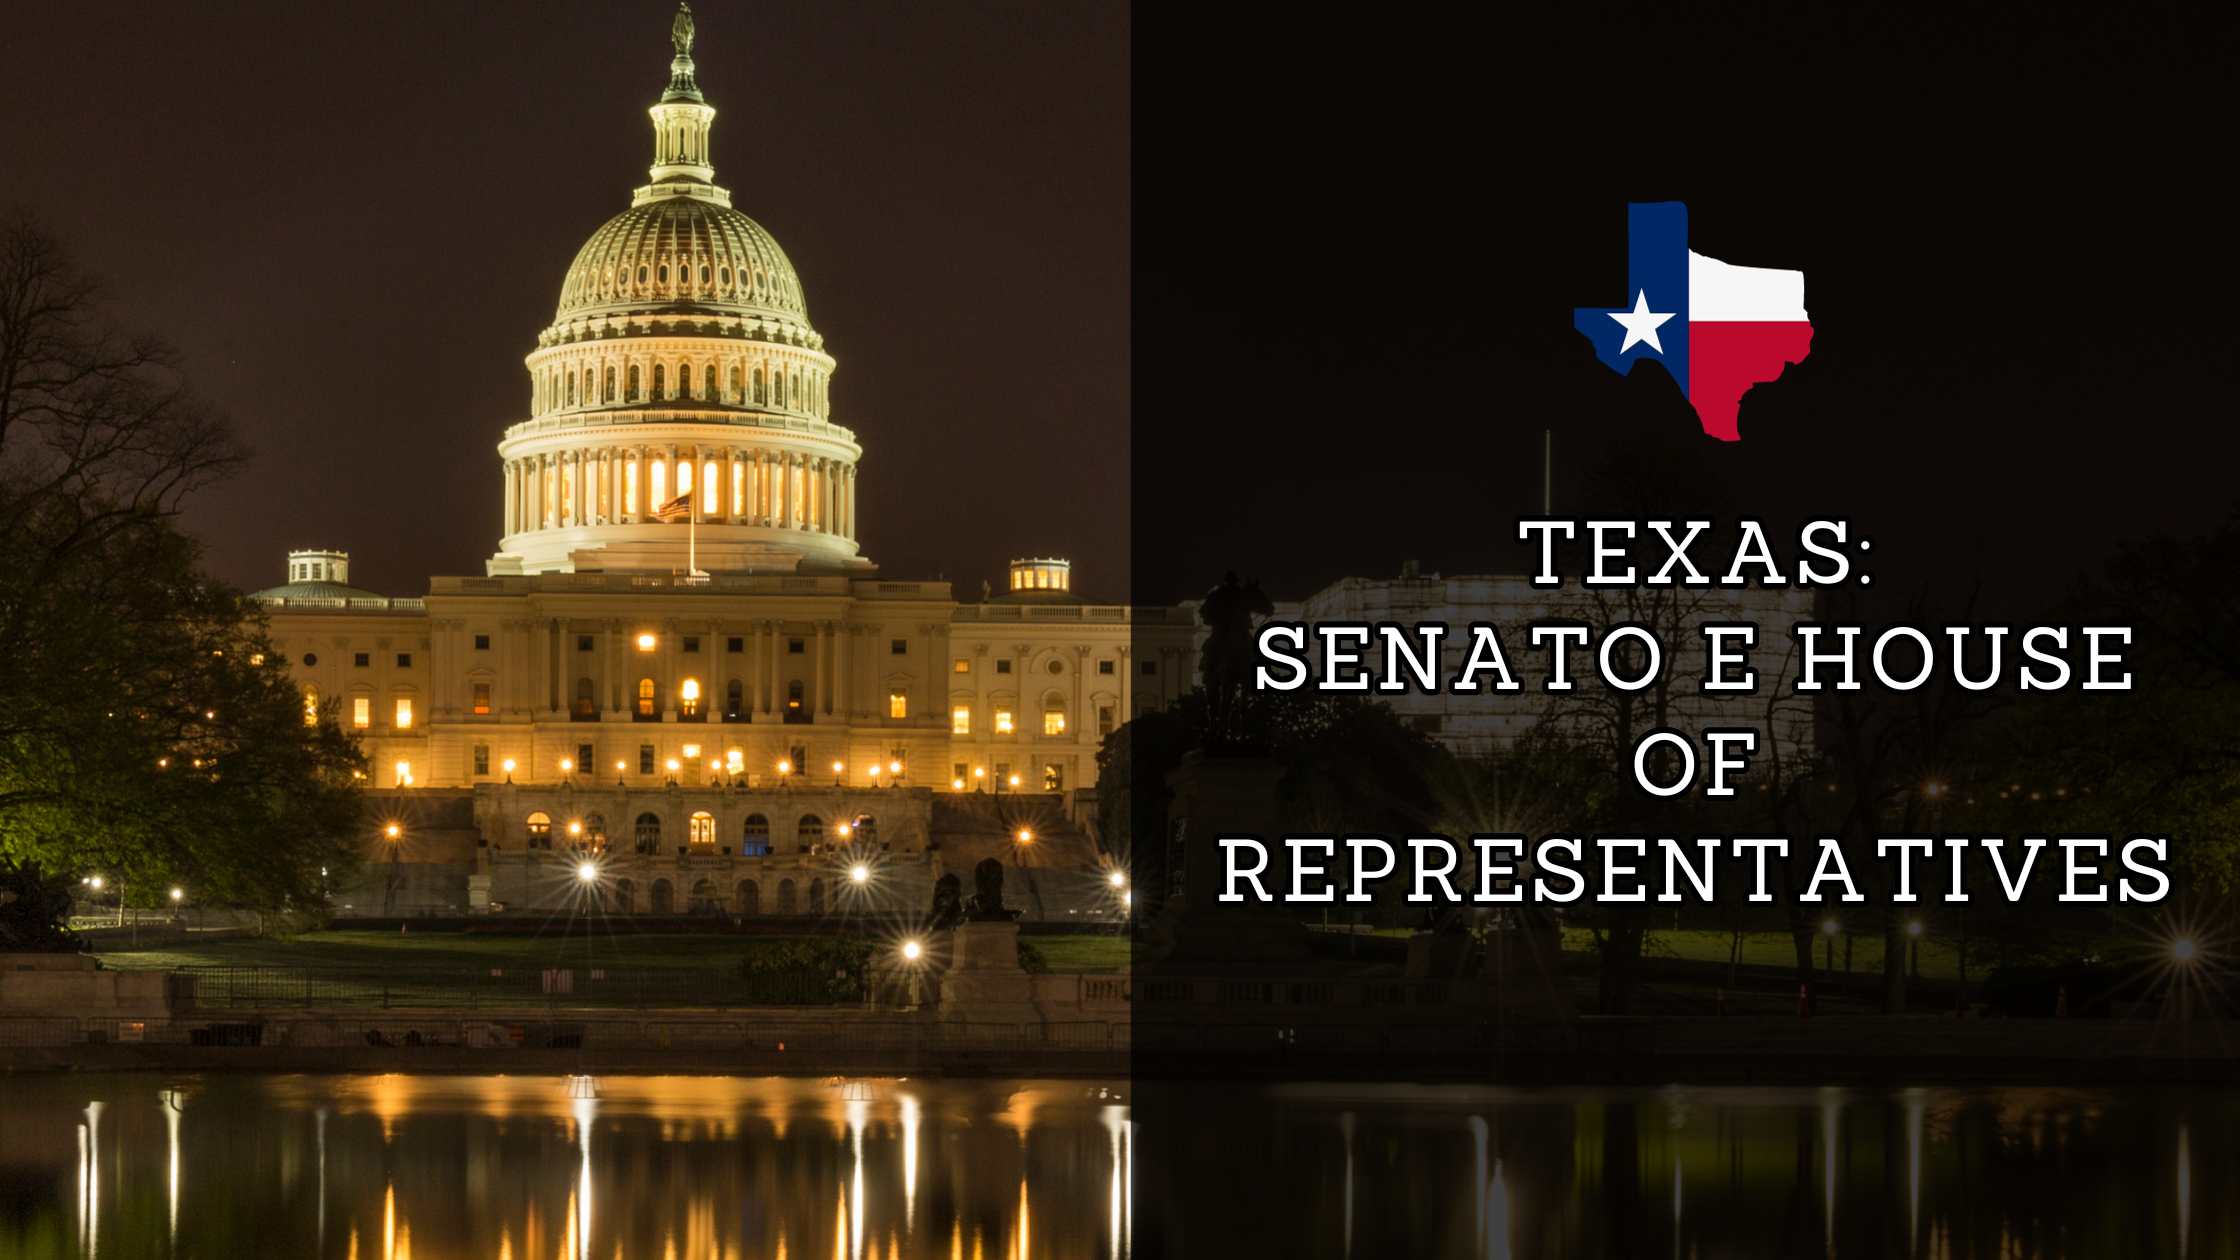 Texas: Senato e House of representative